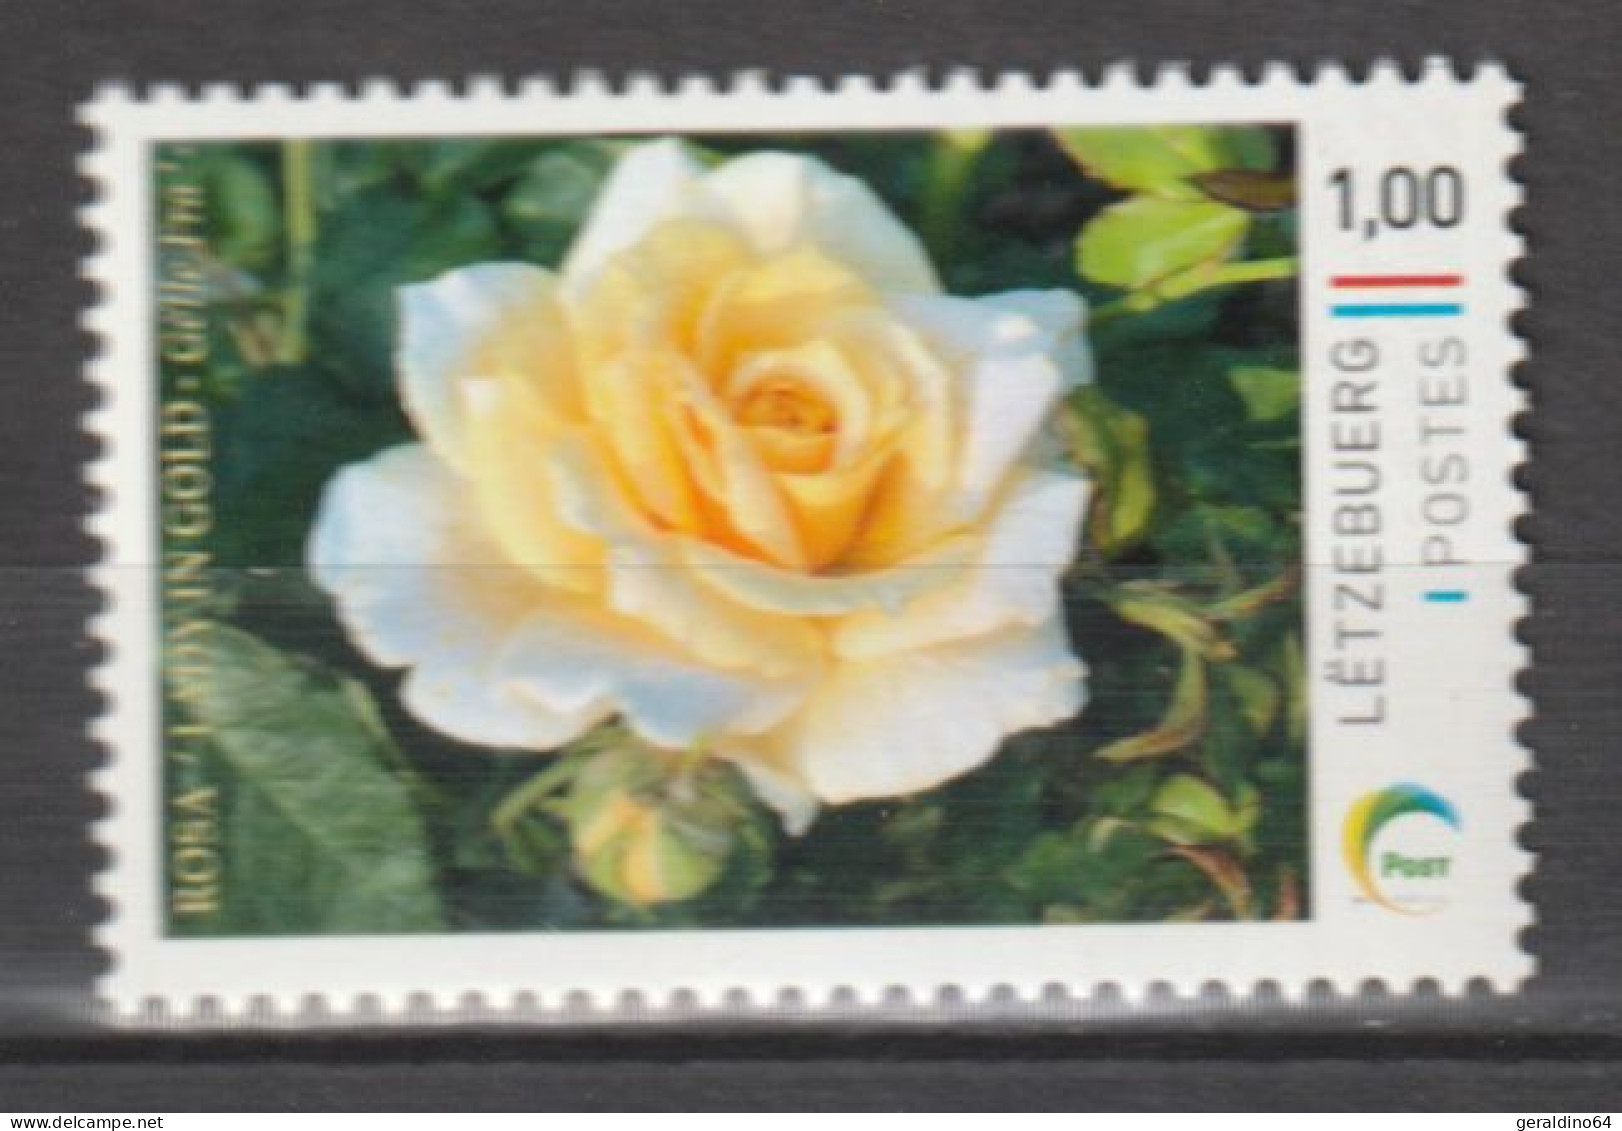 Luxemburg 2023 Personalisierte Briefmarke Rose Lady In Gold ** Postfrisch MNH - Ungebraucht